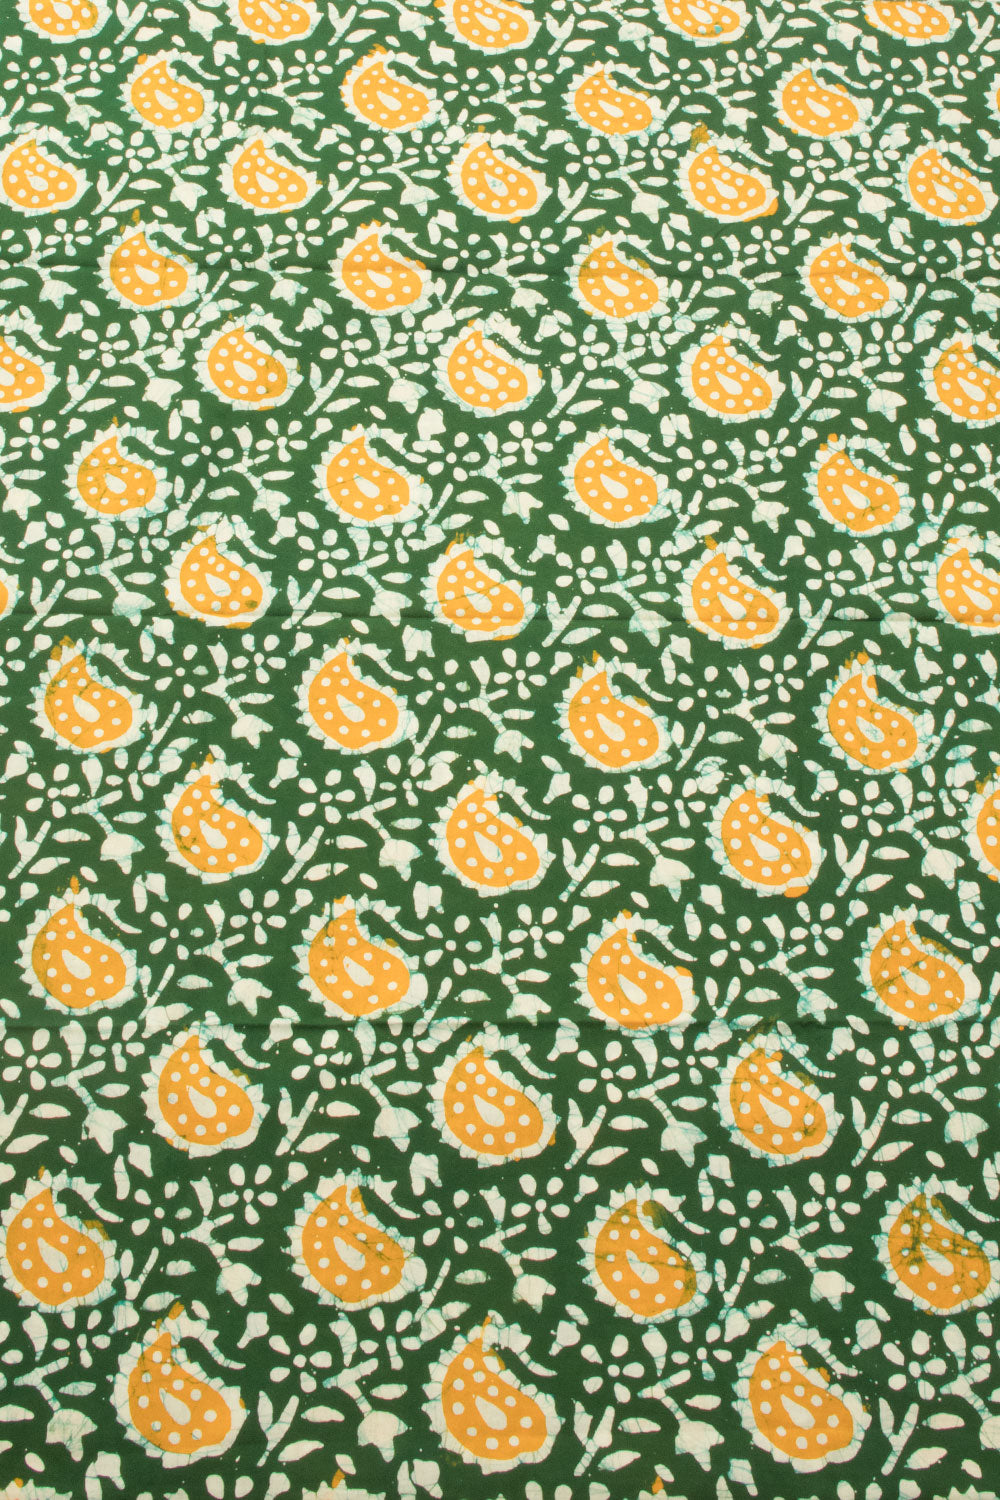 Green Batik Printed Cotton 3-Piece Salwar Suit Material - AvishyaGreen Batik Cotton 3-Piece Salwar Suit Material - Avishya